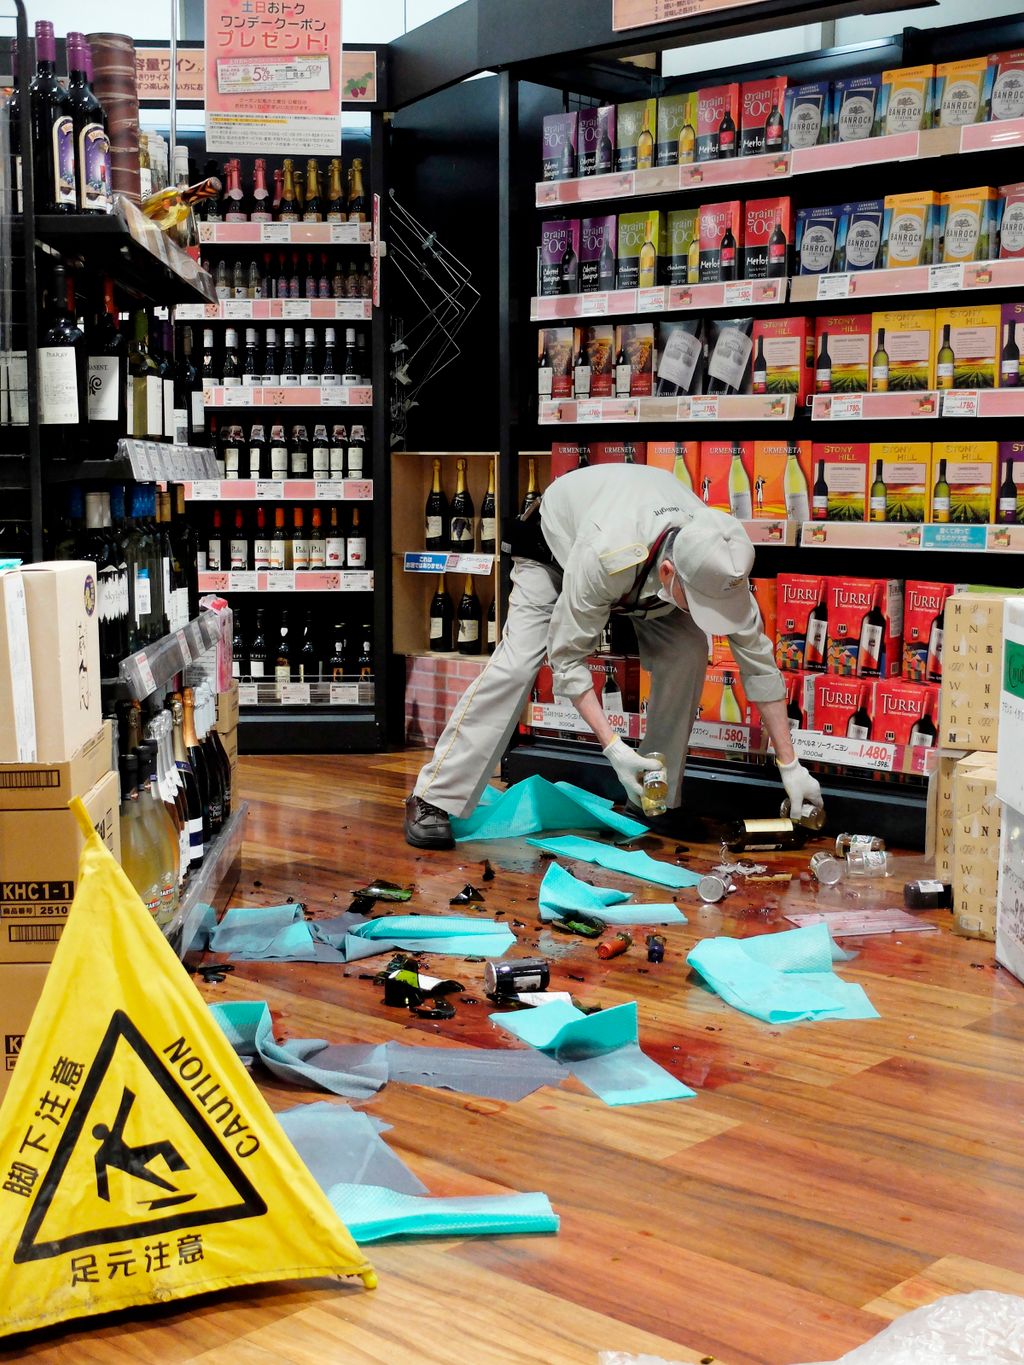 Oszaka, 2018. június 18.
Összetört borosüvegek egy üzletben, Oszakában 2018. június 18-án, miután 6,1-es fokozatú földrengés rázta meg Japán nyugati térségét. A természeti csapásban három ember életét vesztette, és több mint kétszázan megsérültek. A rengé